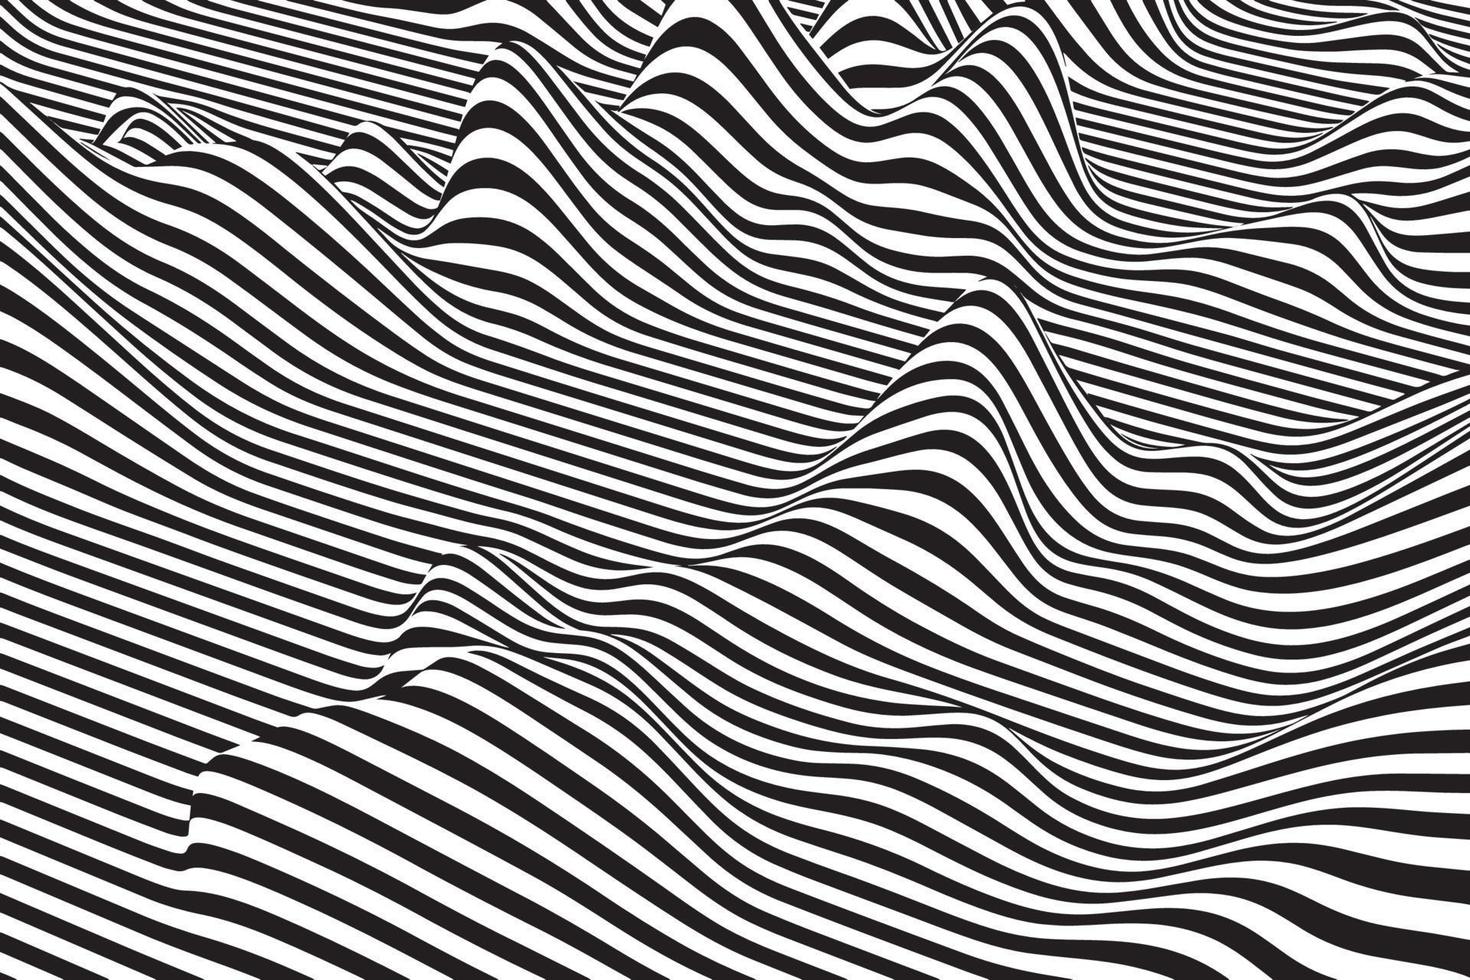 sfondo astratto onda bollente in bianco e nero. elegante superficie curva con motivo liquido. illusione ottica art. struttura a strisce ondulate geometriche digitali vettore